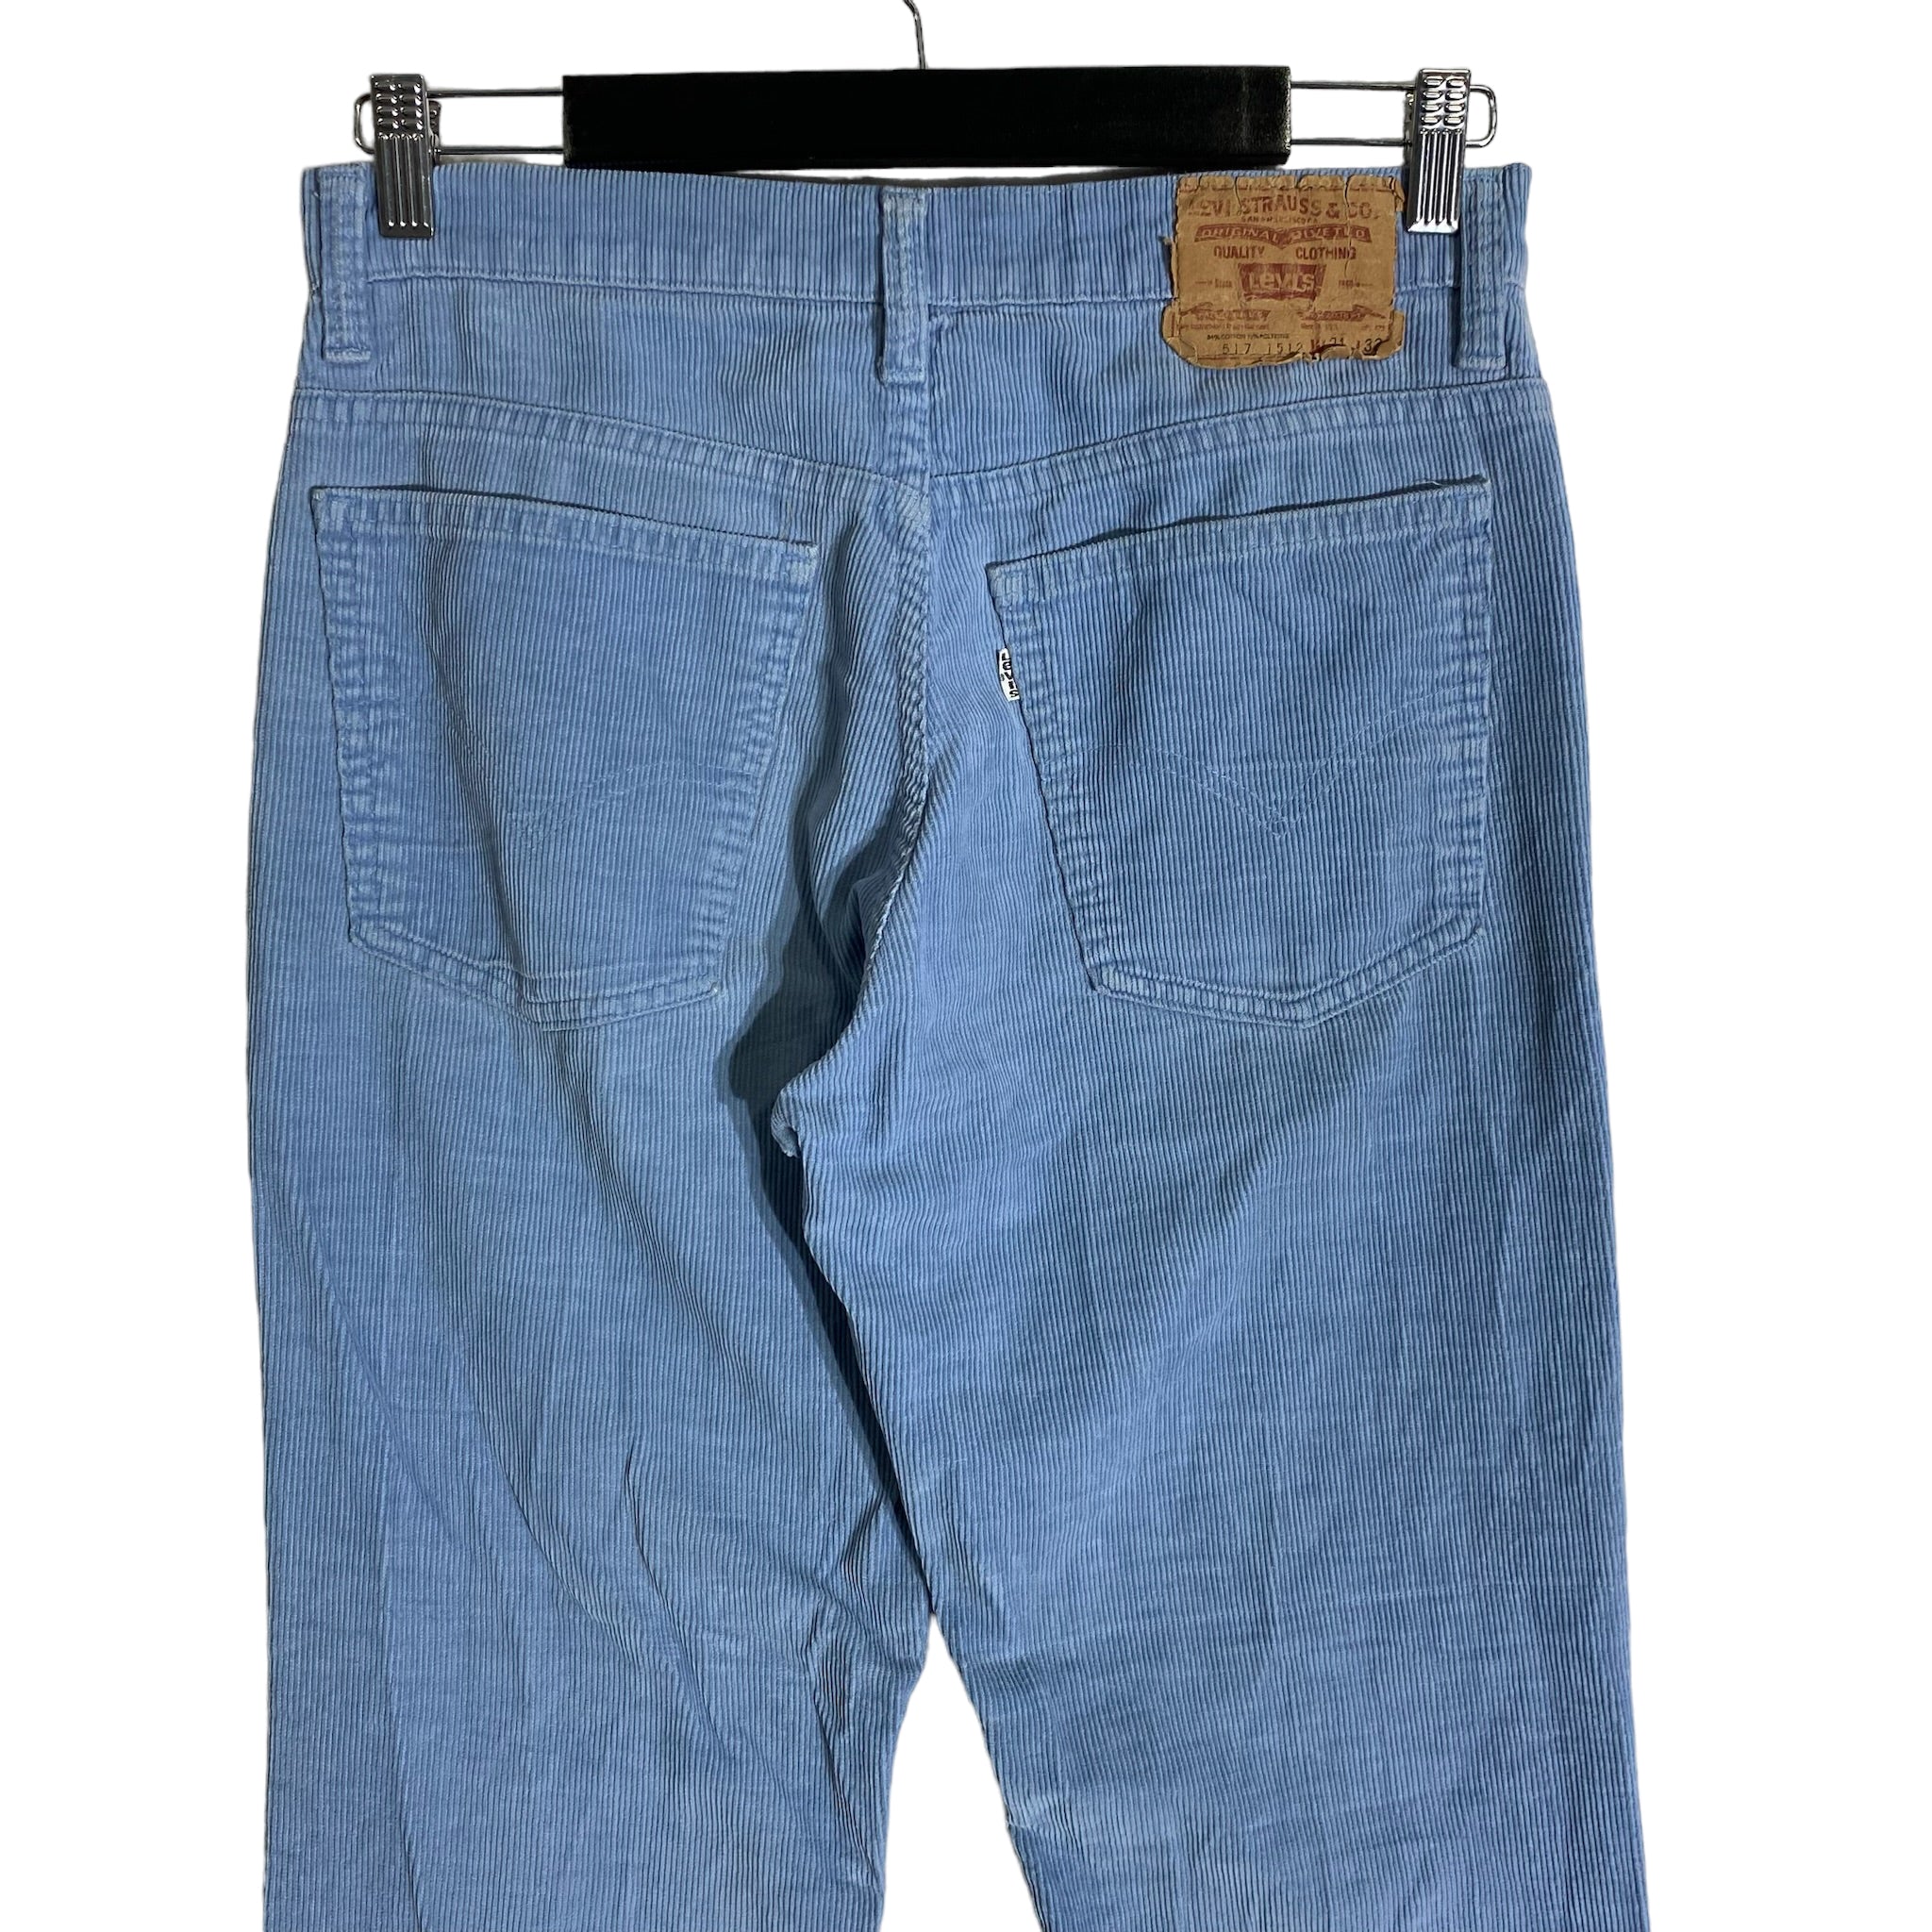 Vintage Levi's 517 Corduroys Pants